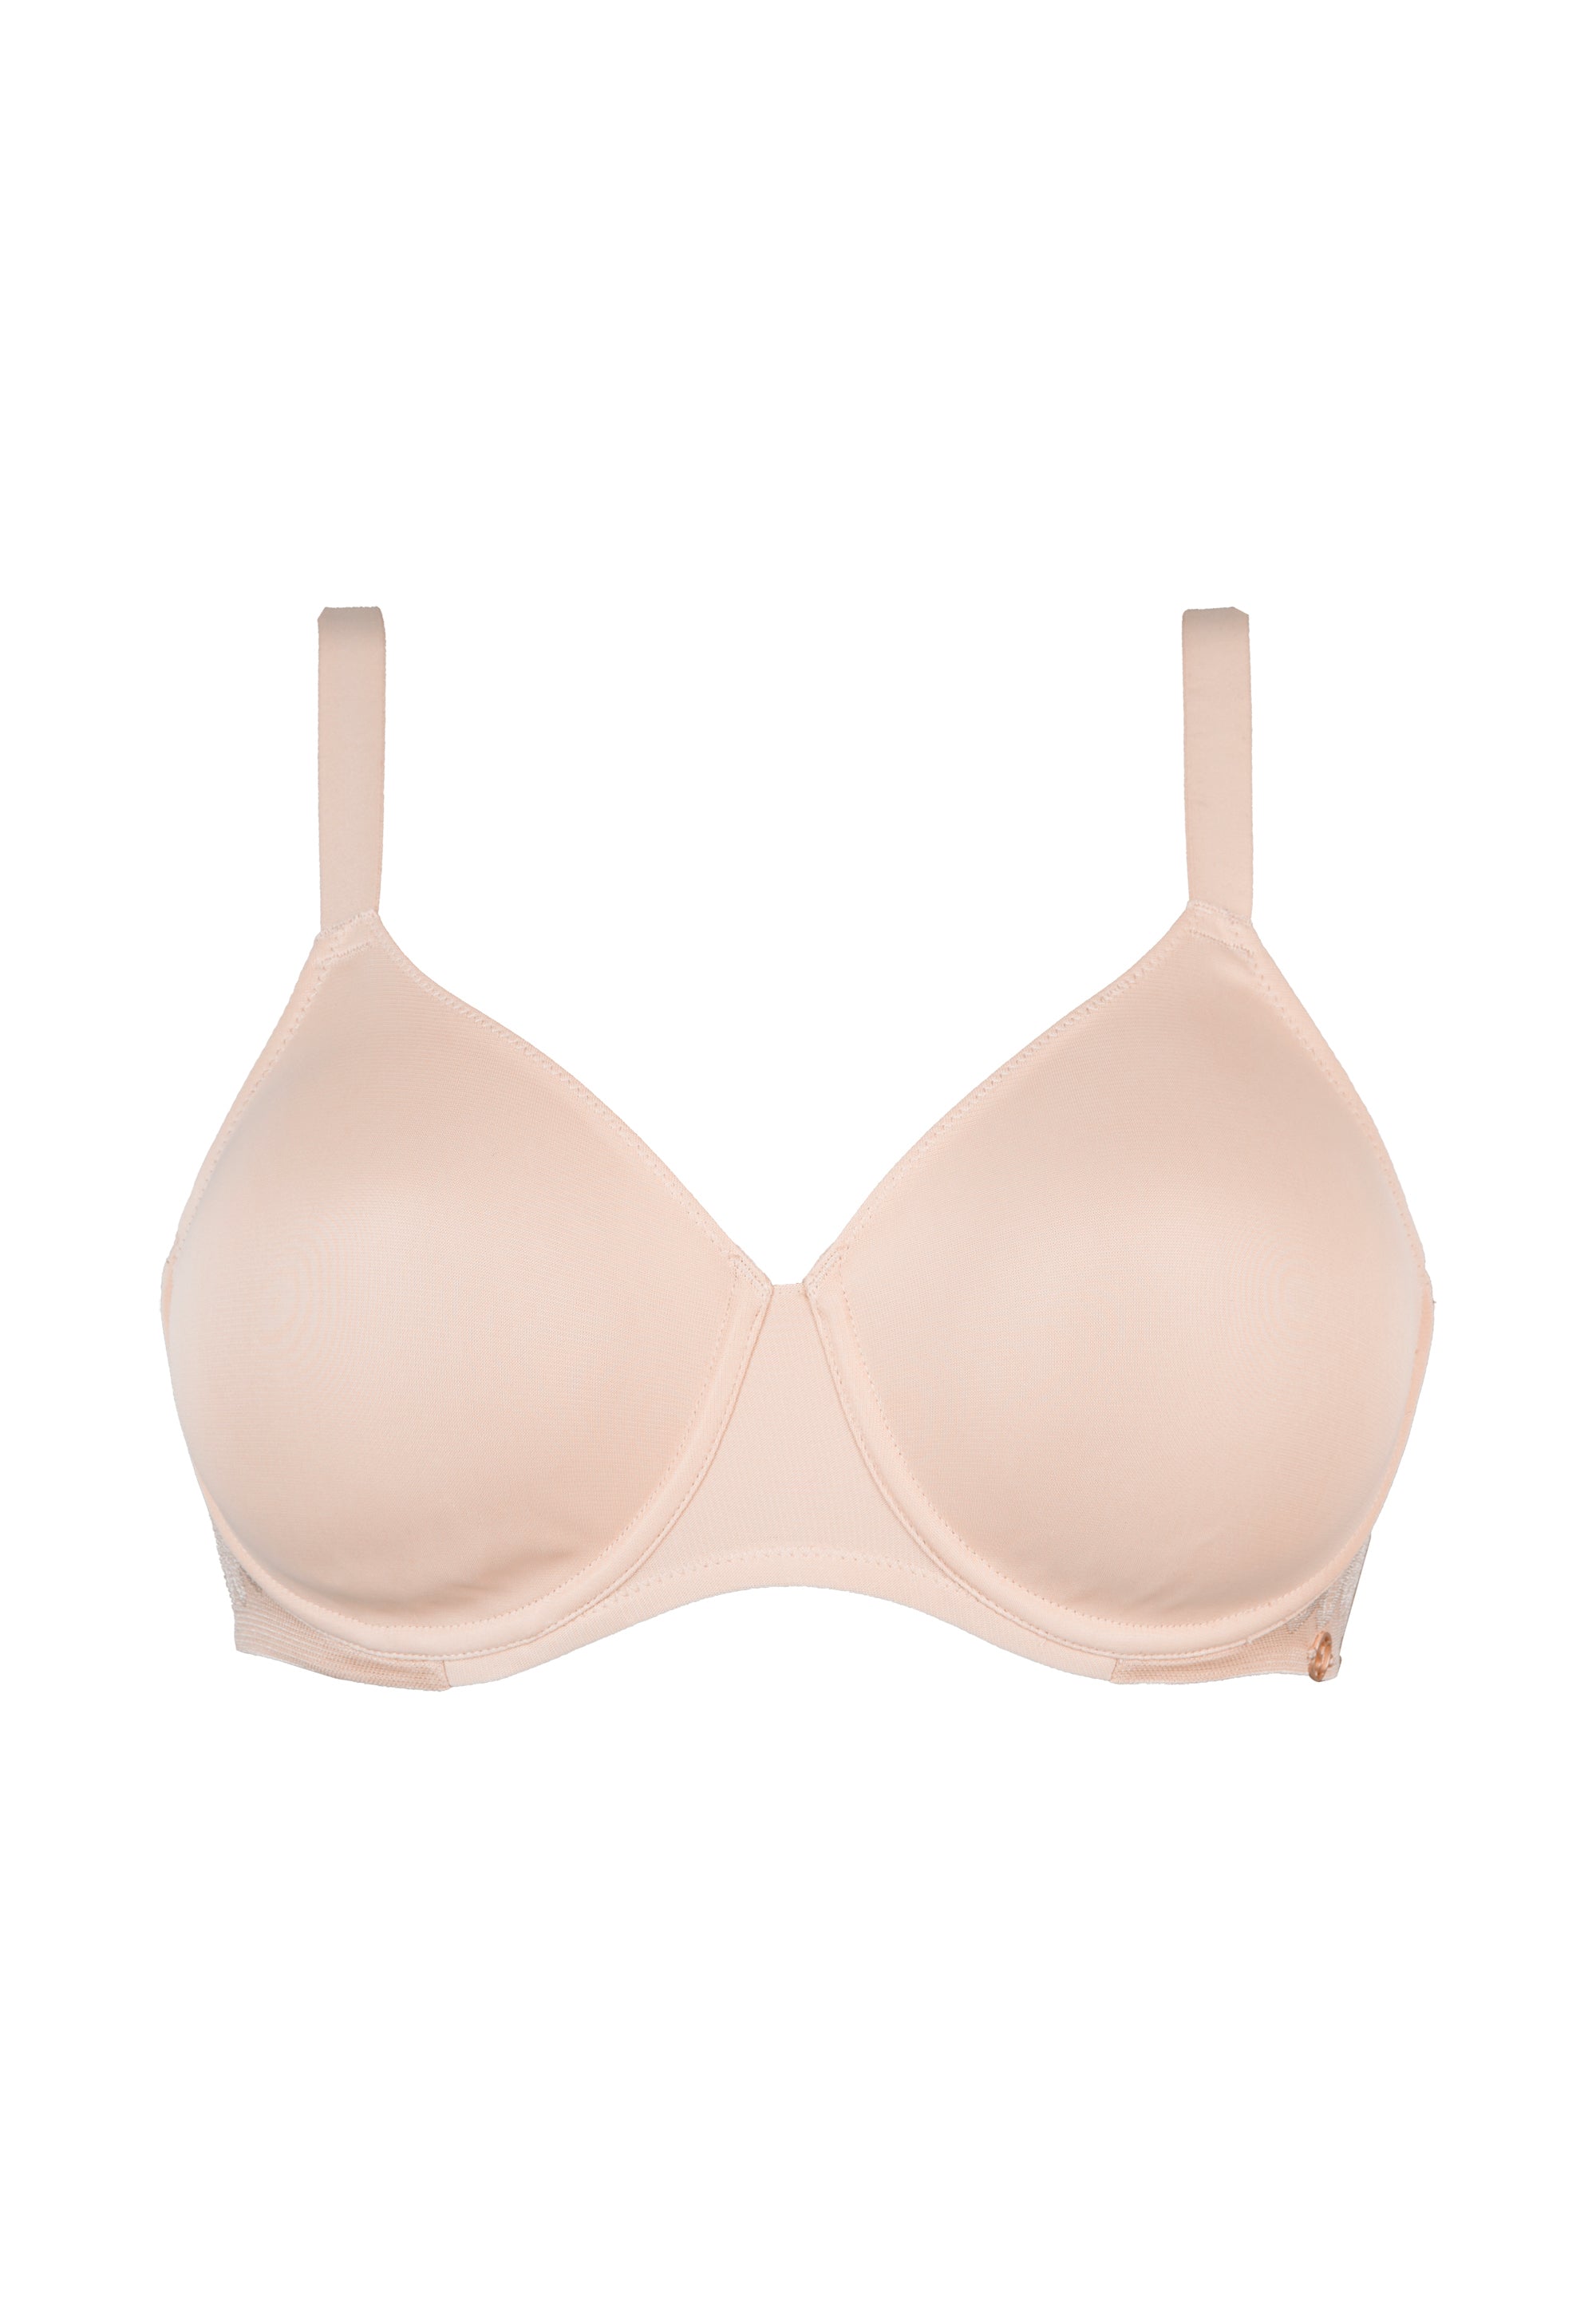 Soutien-gorge minimiseur Perfect curves Blush